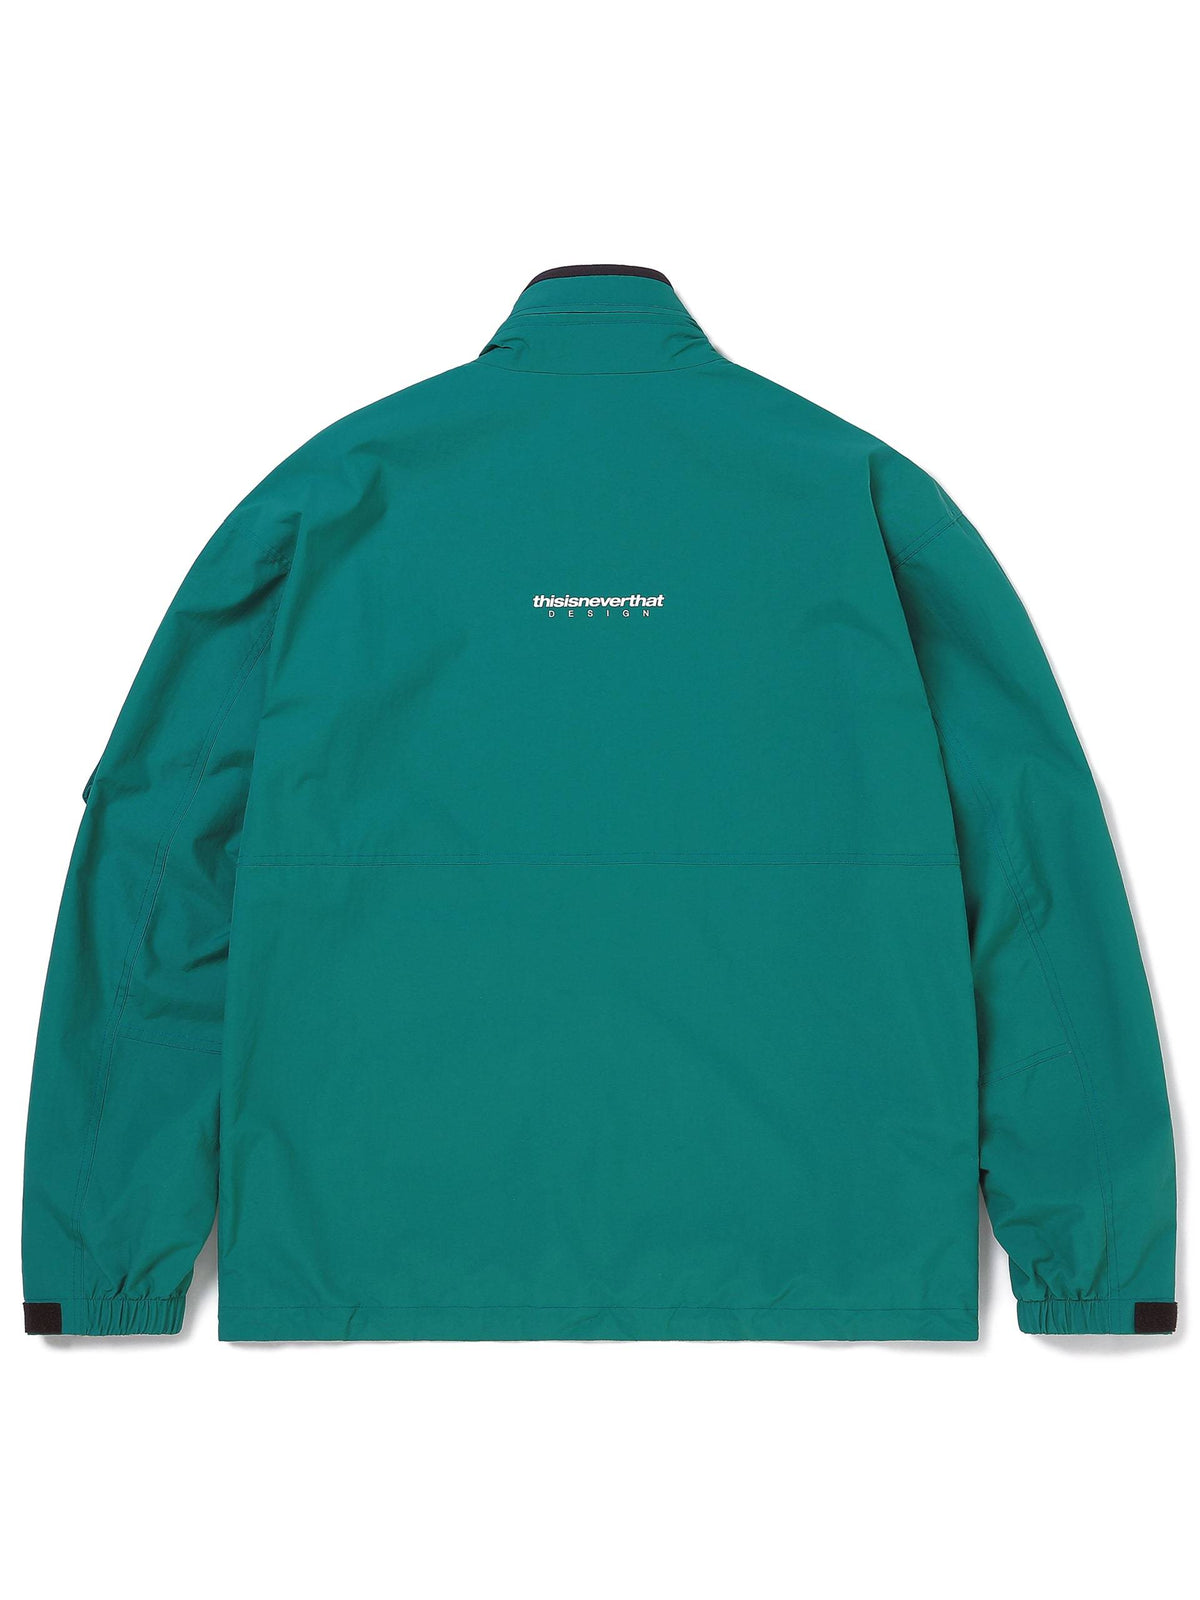 DSN SUPPLEX® Jacket Outerwear 